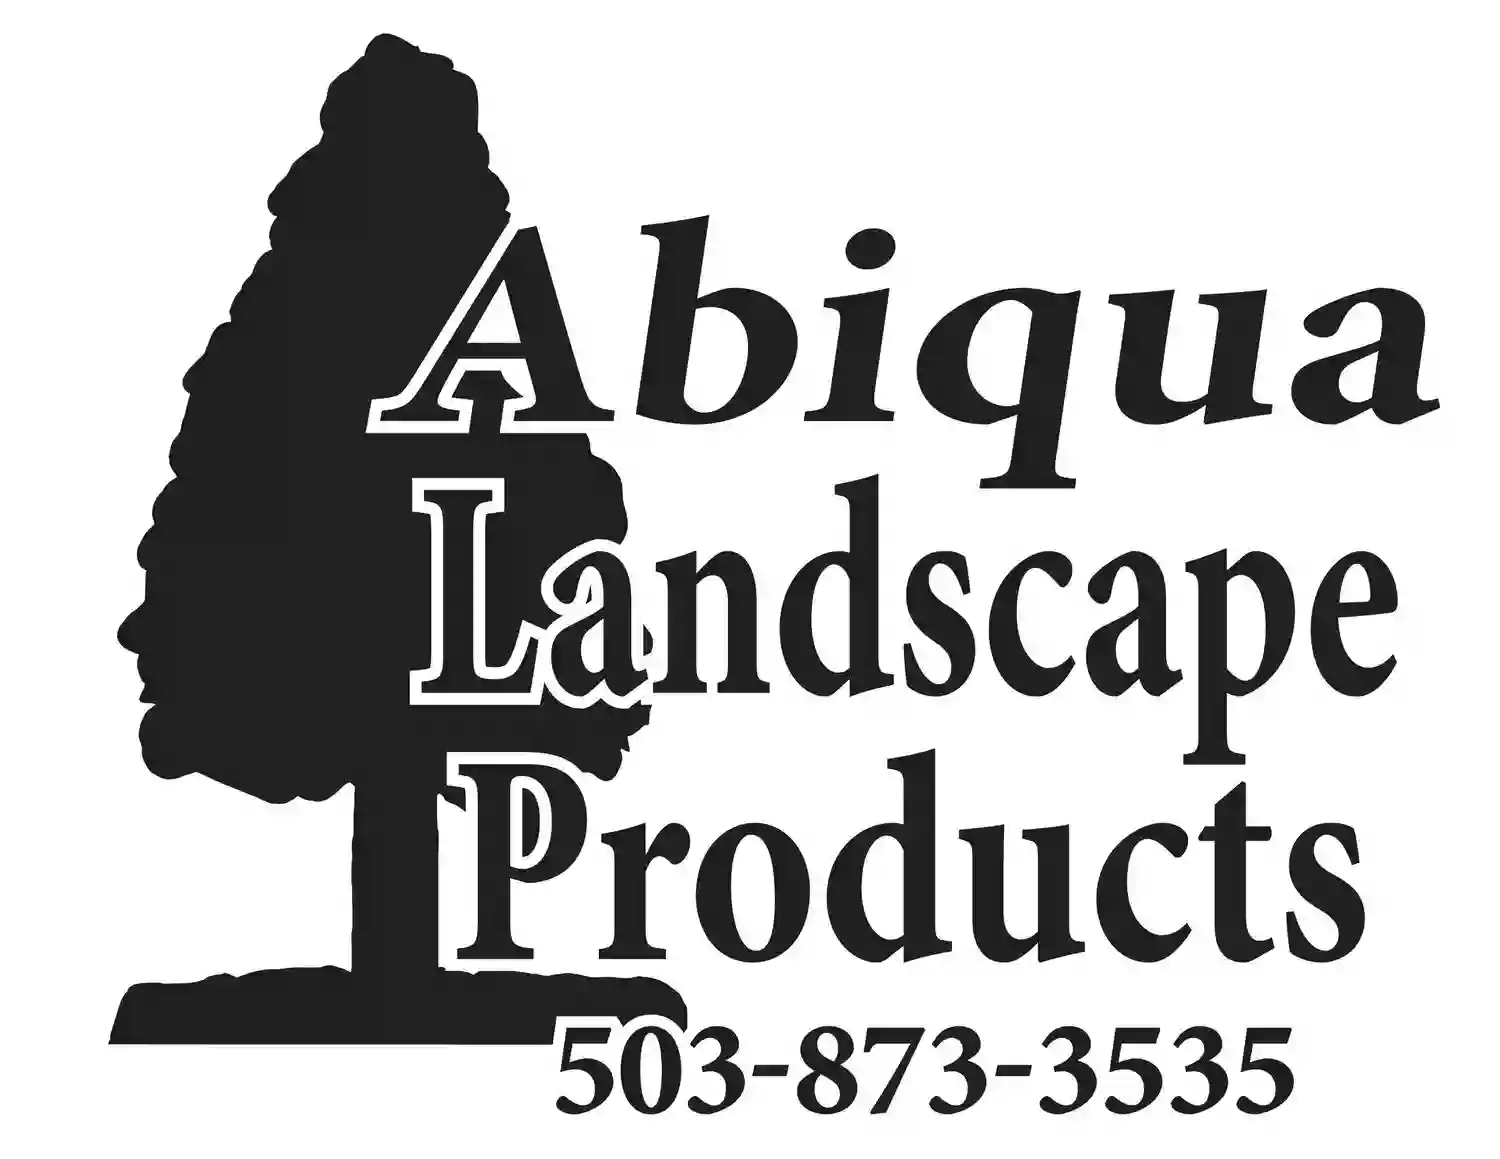 Abiqua Landscape Products